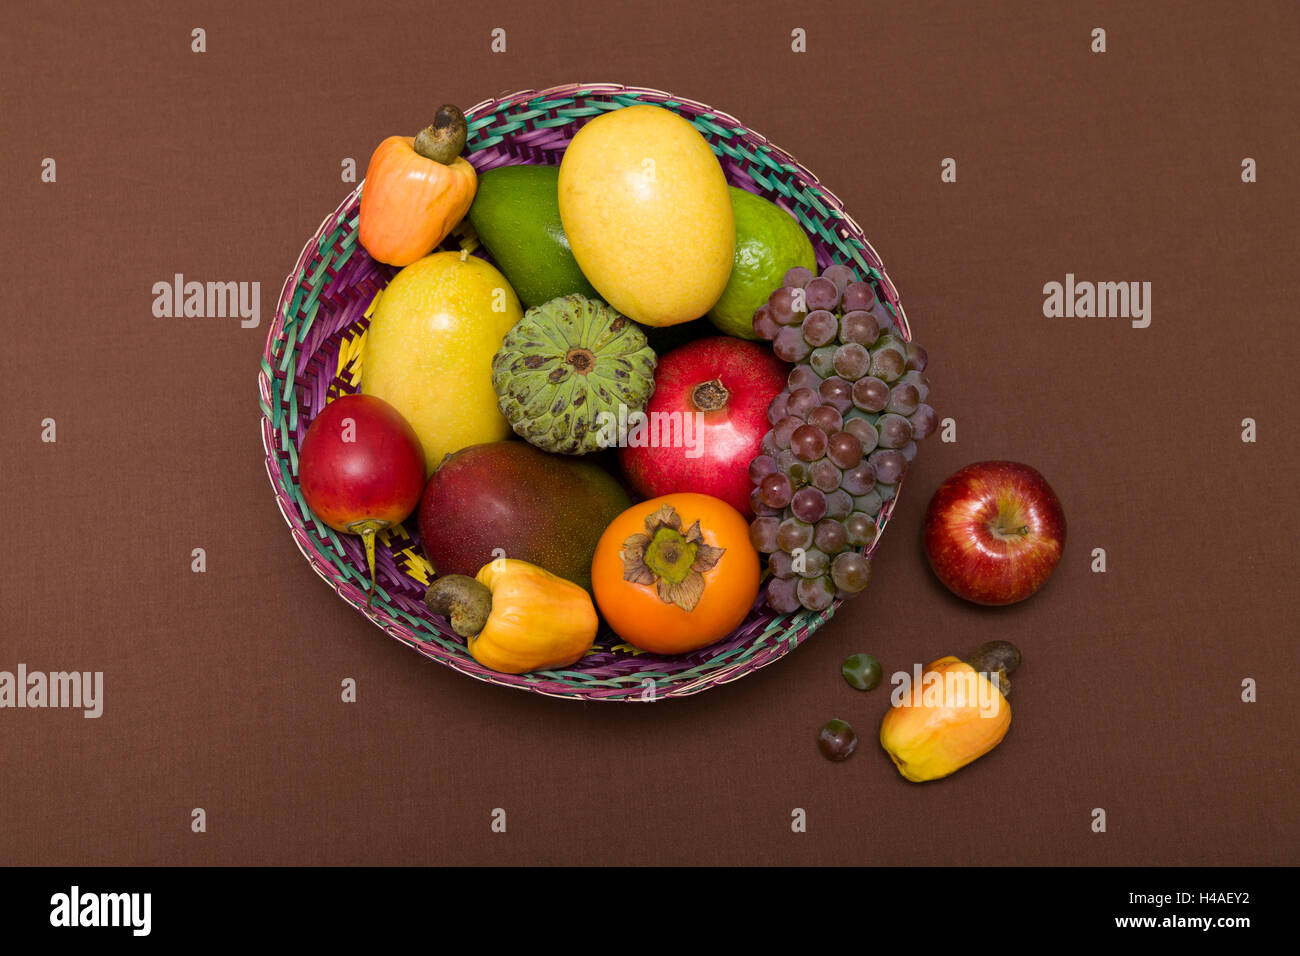 Exotic fruit basket Stock Photo